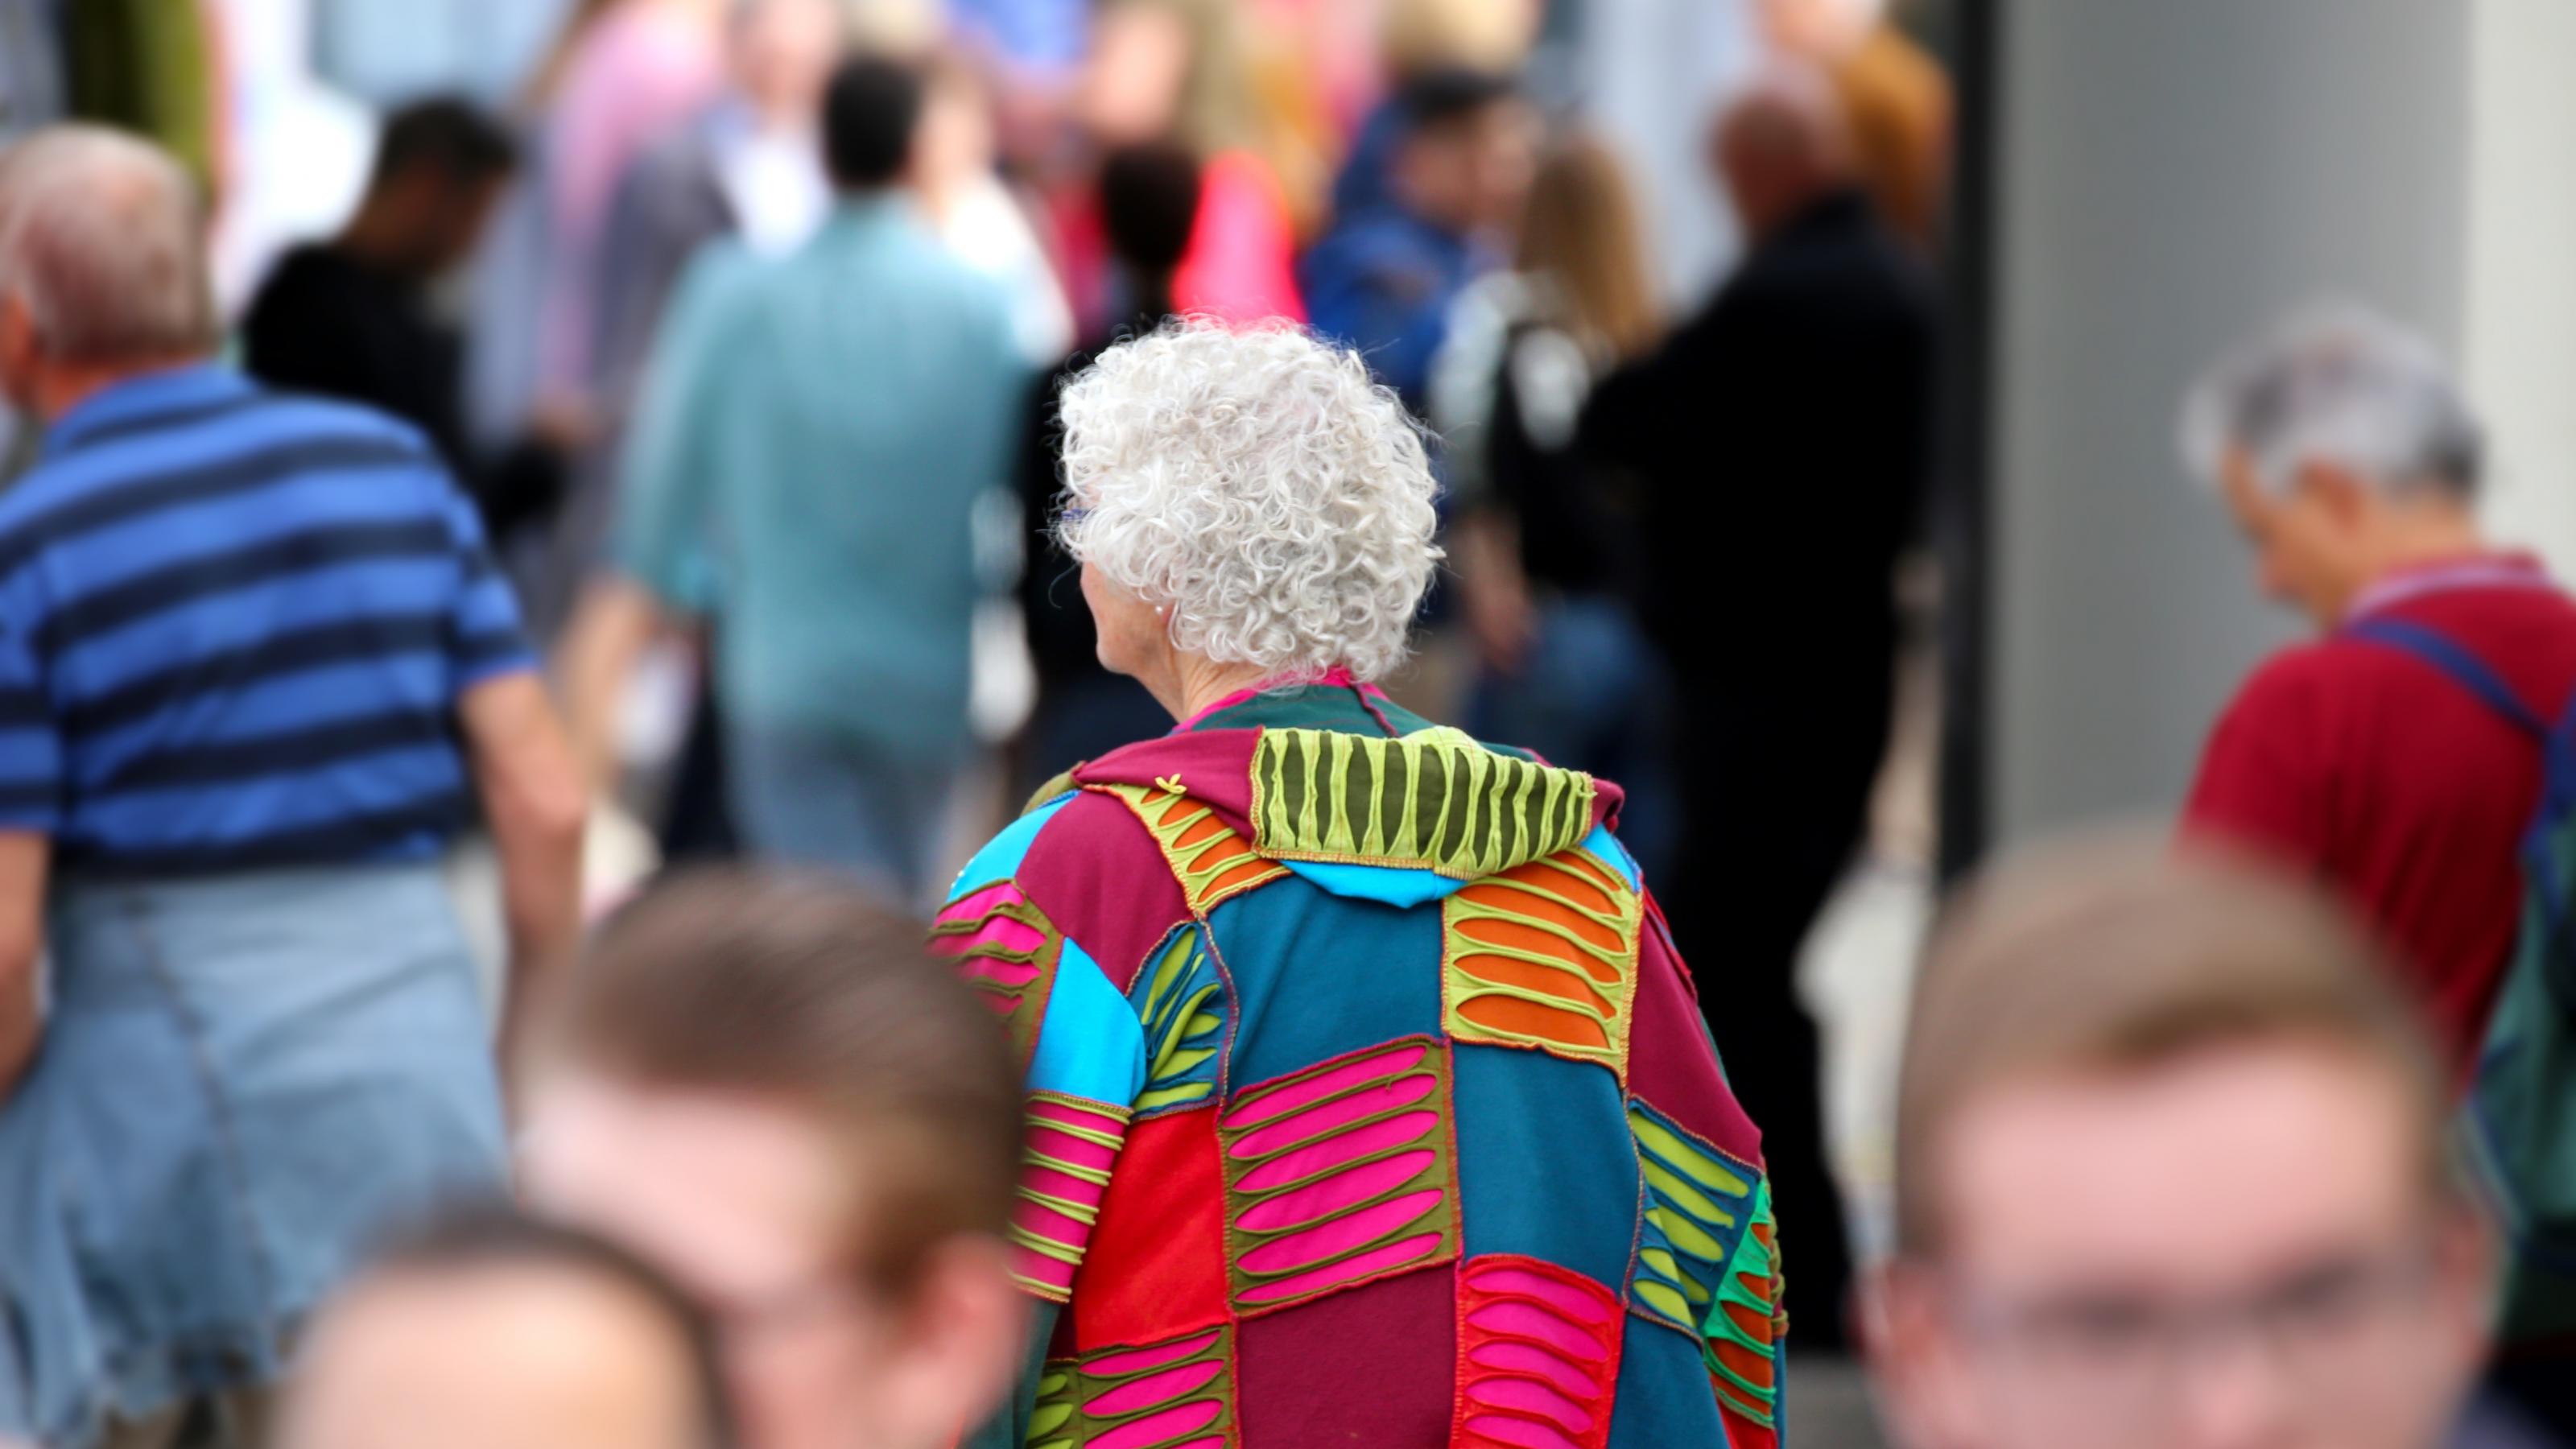 Menschen in einer Fußgängerzone. In der Mitte des Bildes eine ältere Frau von hinten, mit grauen Haaren und einer bunten Jacke.